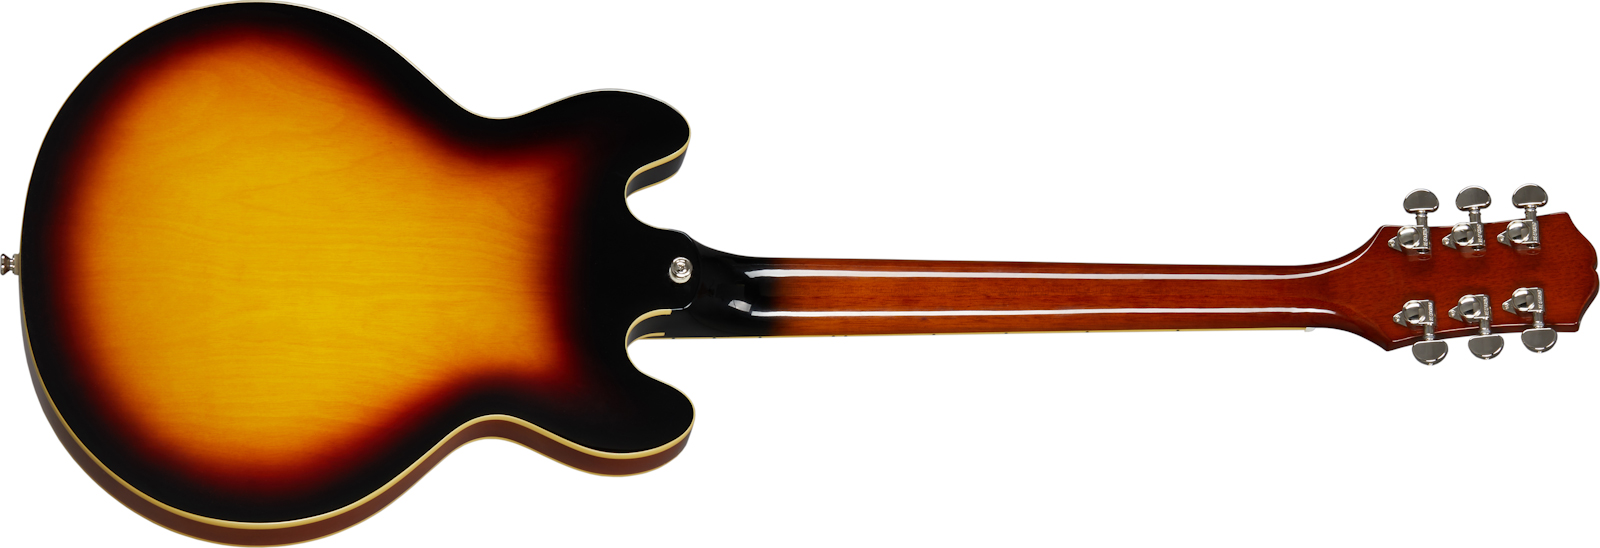 Epiphone Es-339 Inspired By Gibson 2020 2h Ht Rw - Vintage Sunburst - Semi hollow elektriche gitaar - Variation 1